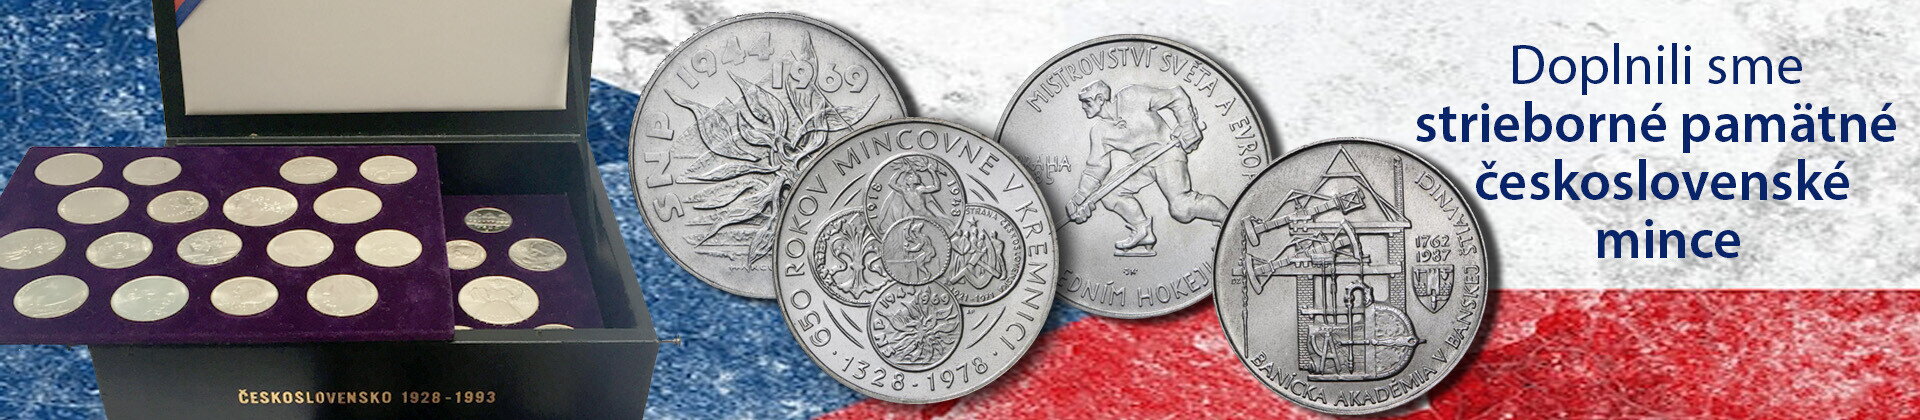 Strieborné pamätné československé mince